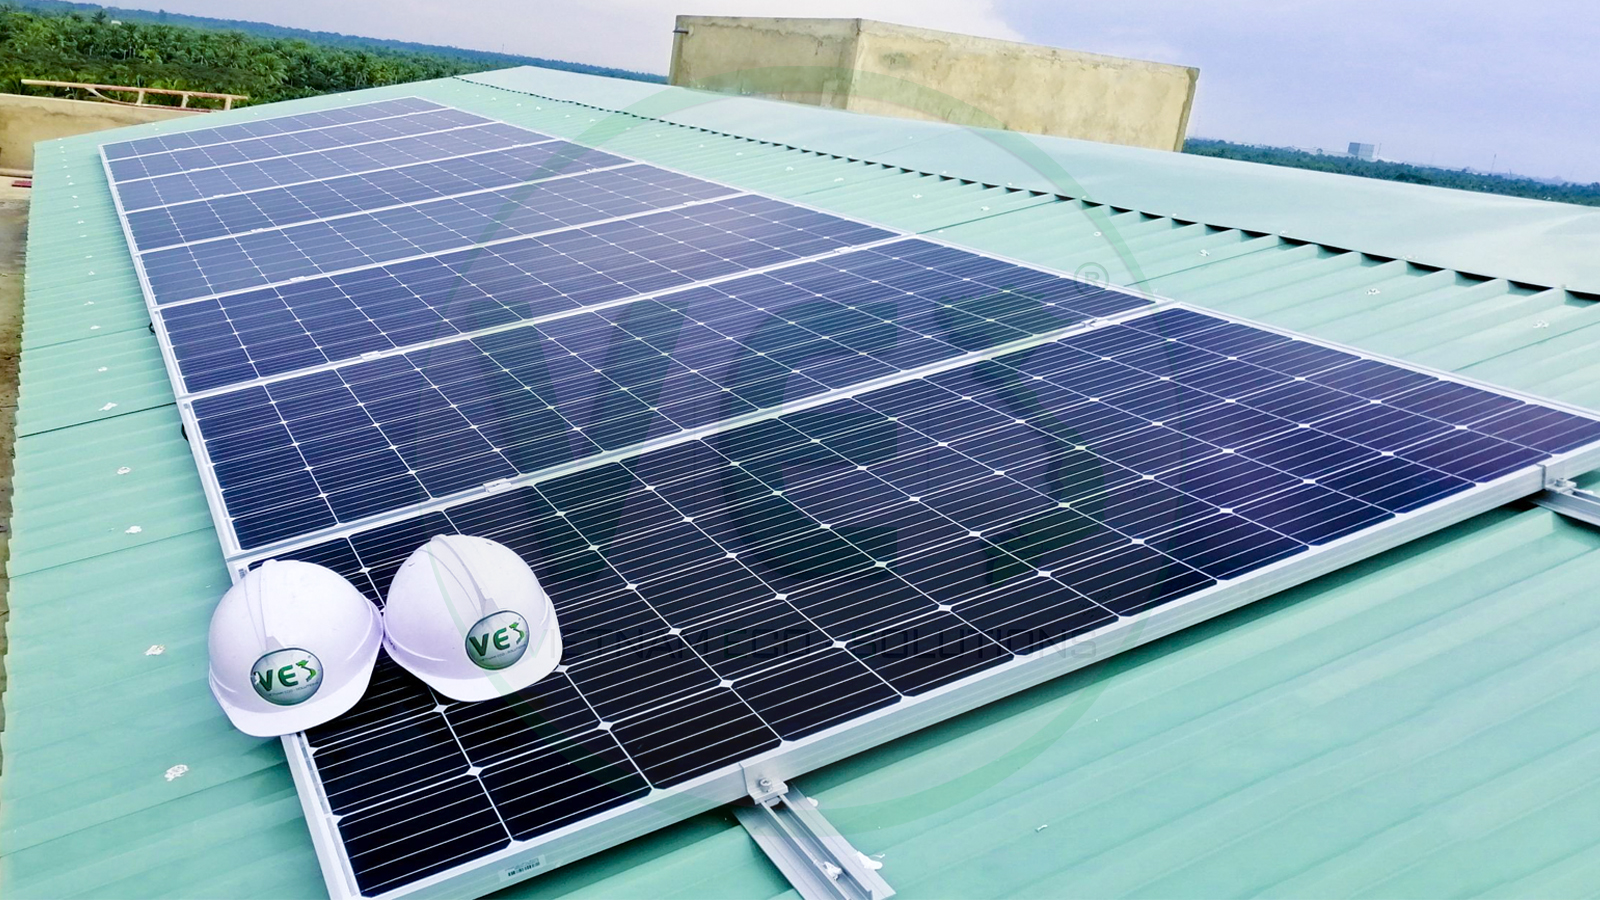 VES lắp đặt điện năng lượng mặt trời cho khách hàng Chú Tư tại Tiền Giang